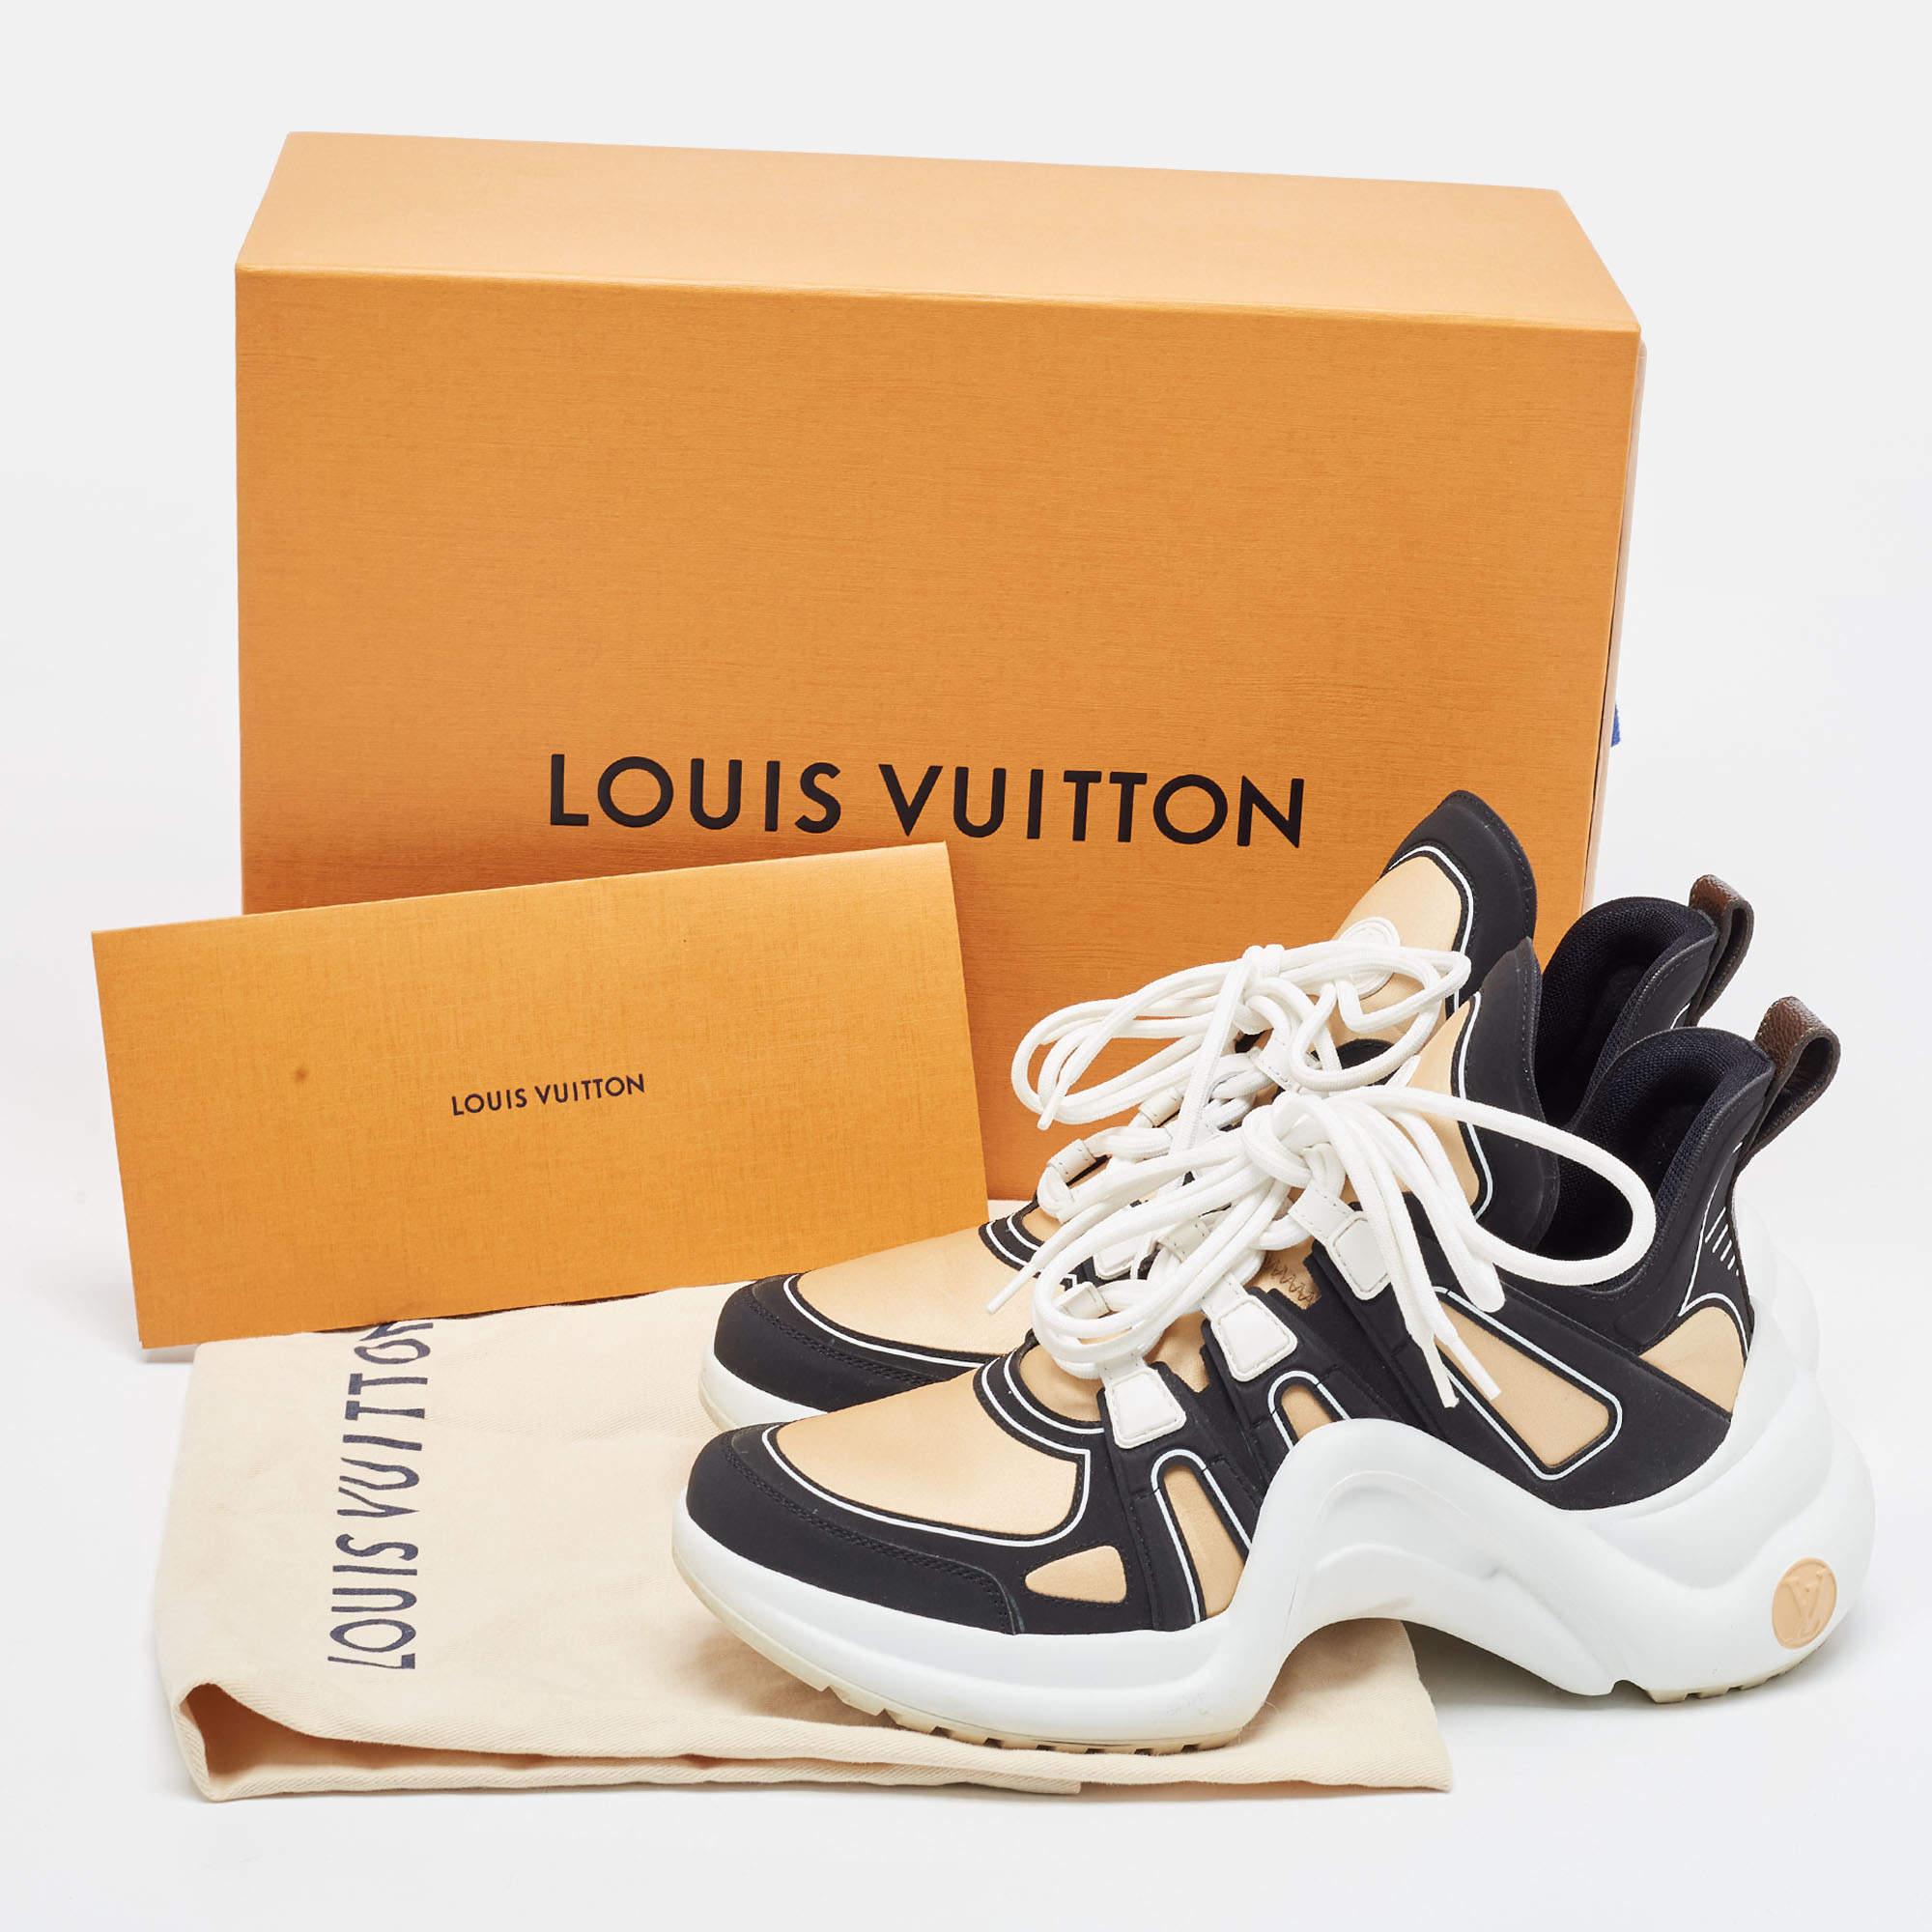 Louis Vuitton Brown/Schwarz Nylon und Leder Archlight Sneakers Größe 39 2